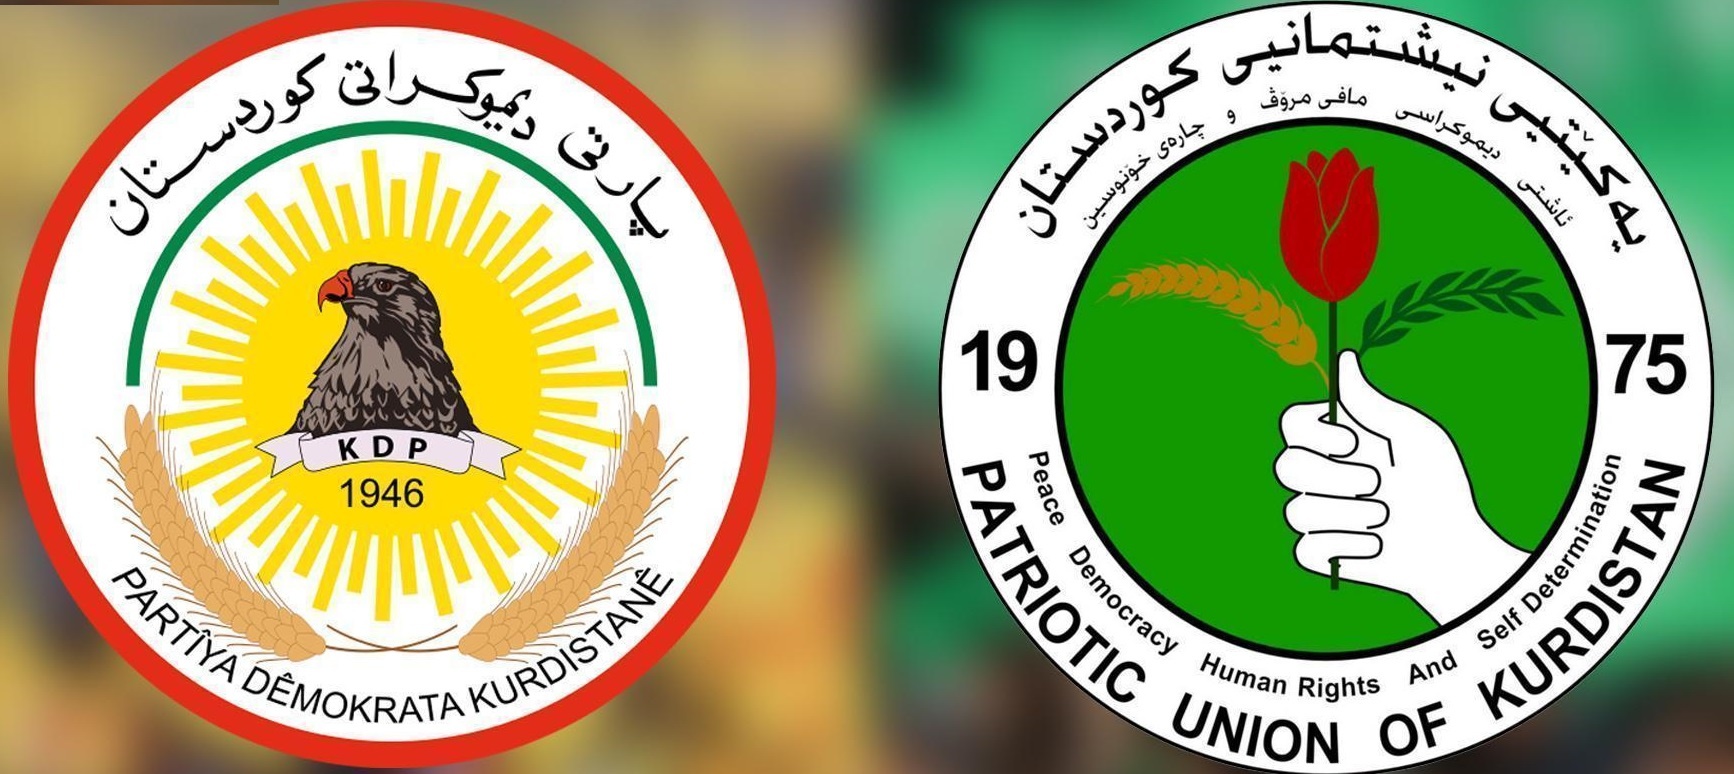 برگزاری نشست اتحادیه میهنی و حزب دمکرات دربارە قانون اساسی و انتخابات اقلیم کردستان